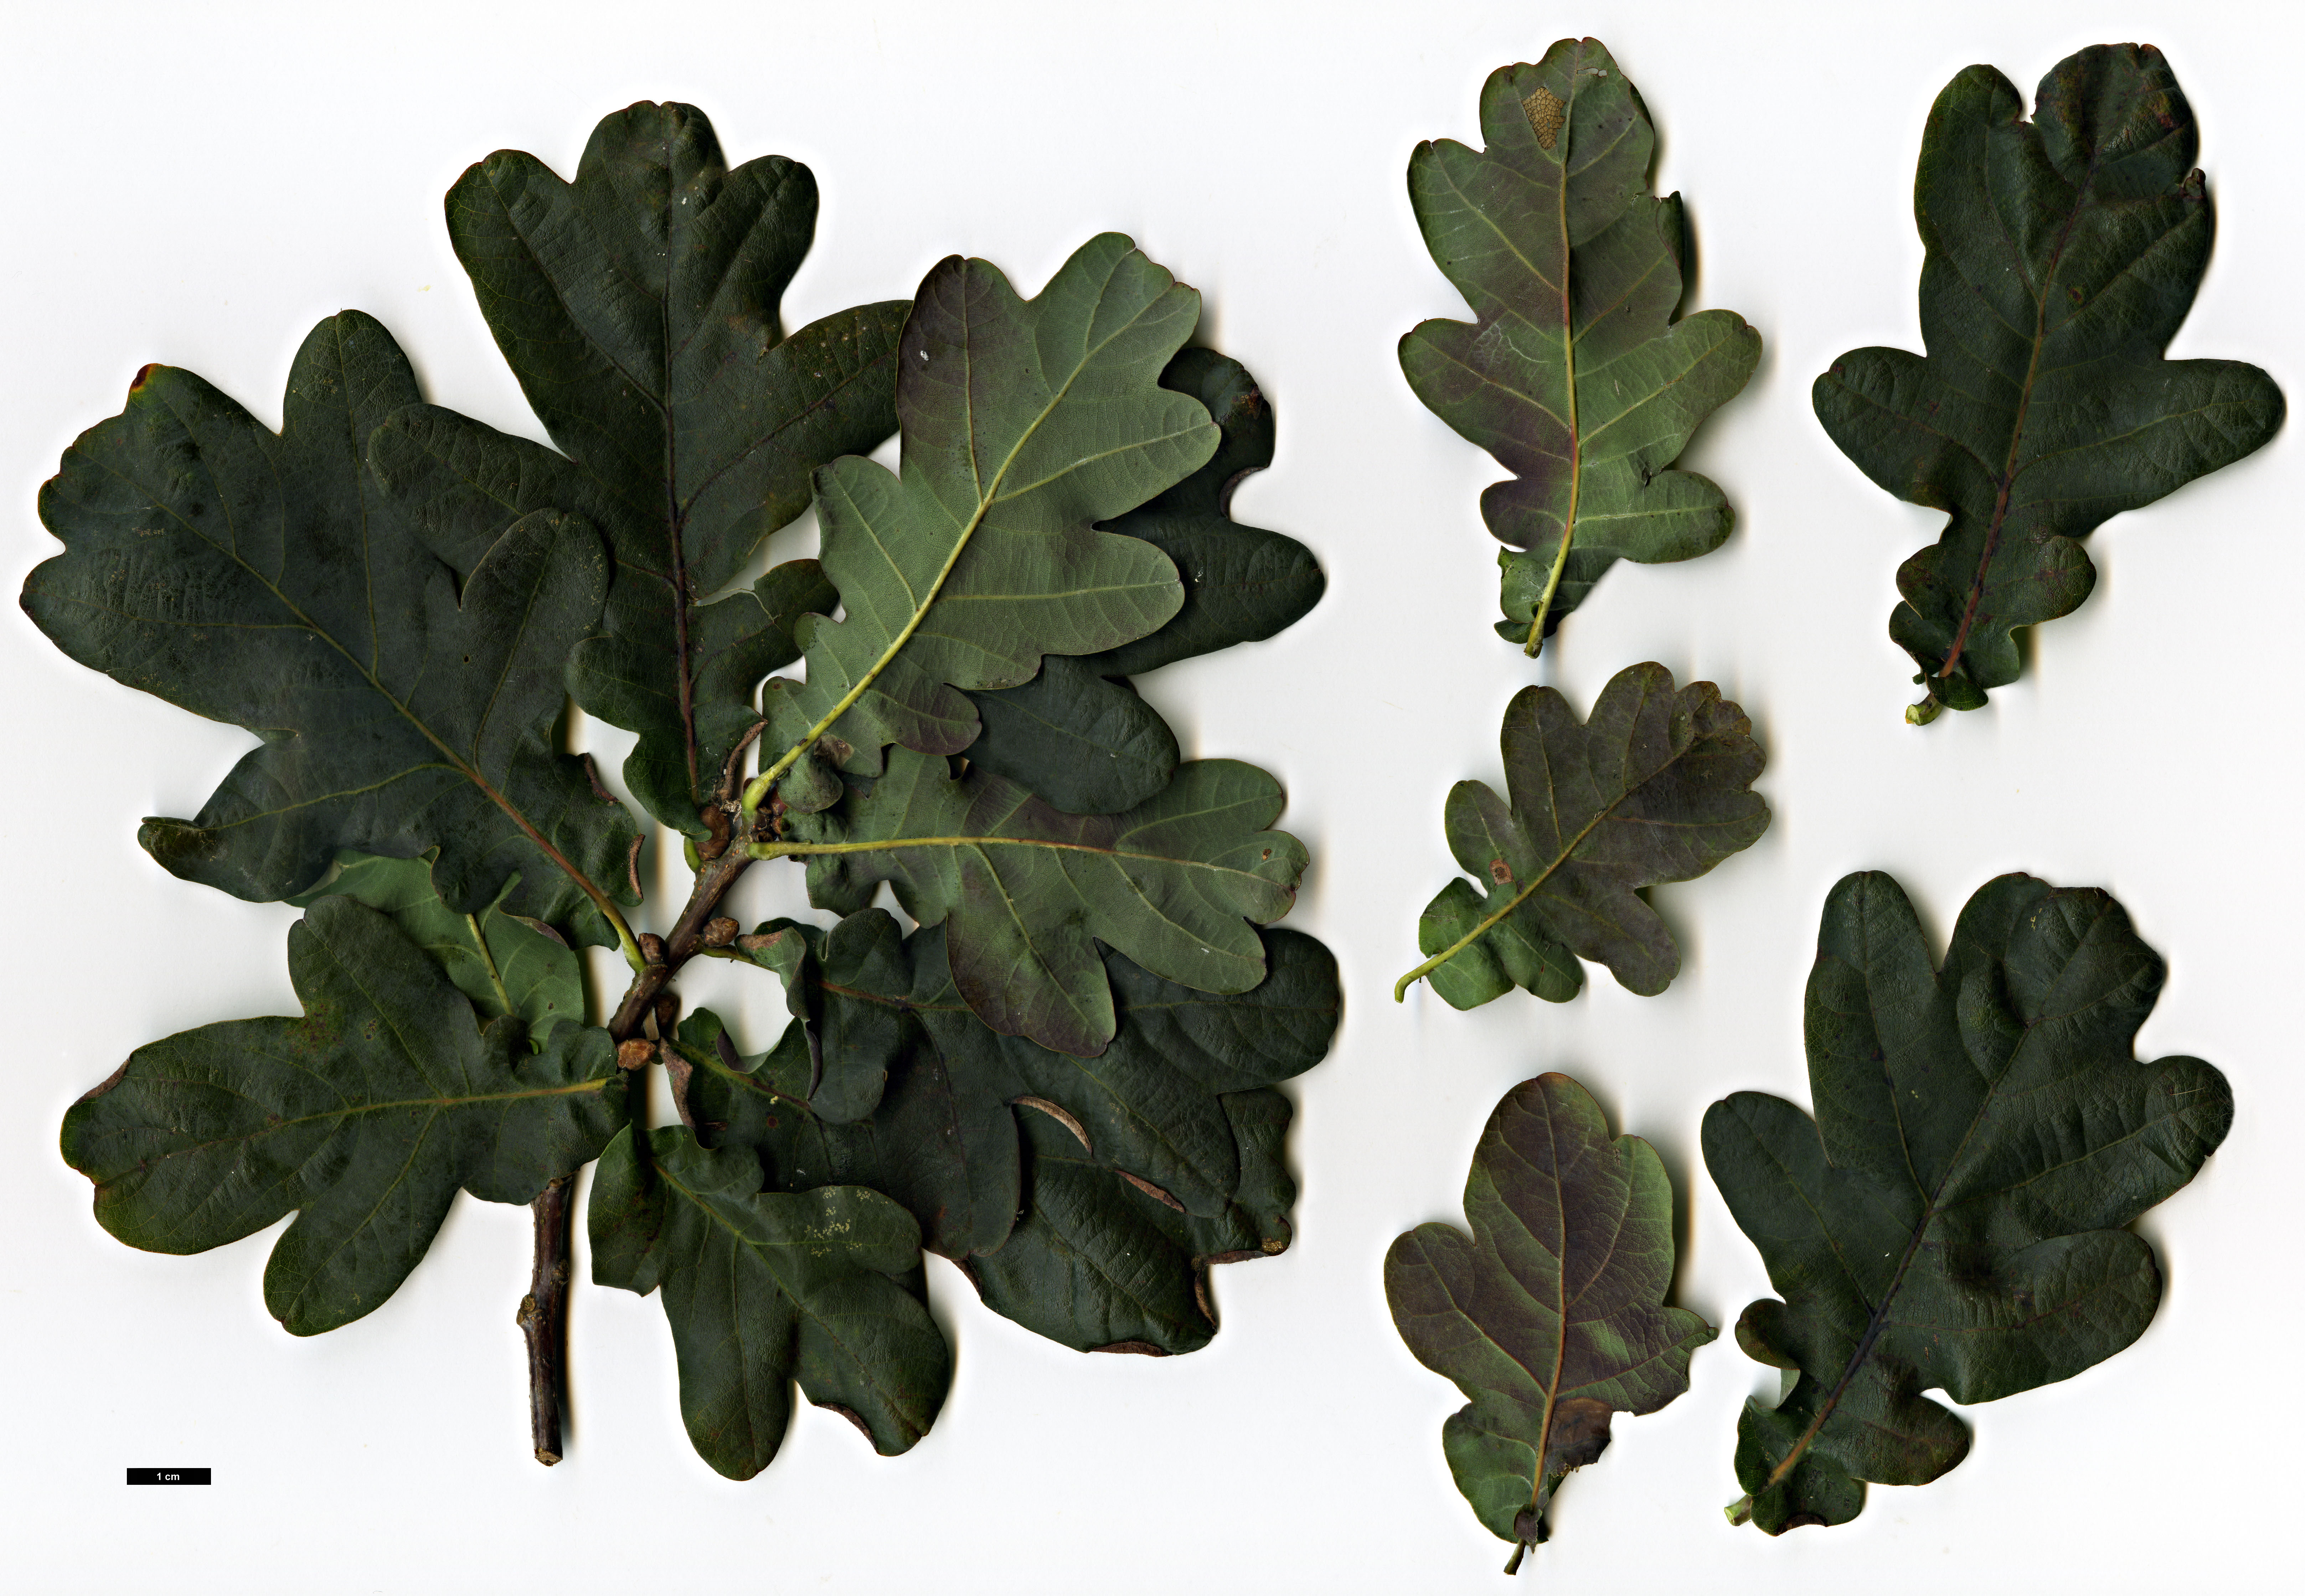 High resolution image: Family: Fagaceae - Genus: Quercus - Taxon: robur - SpeciesSub: 'Purpurascens'